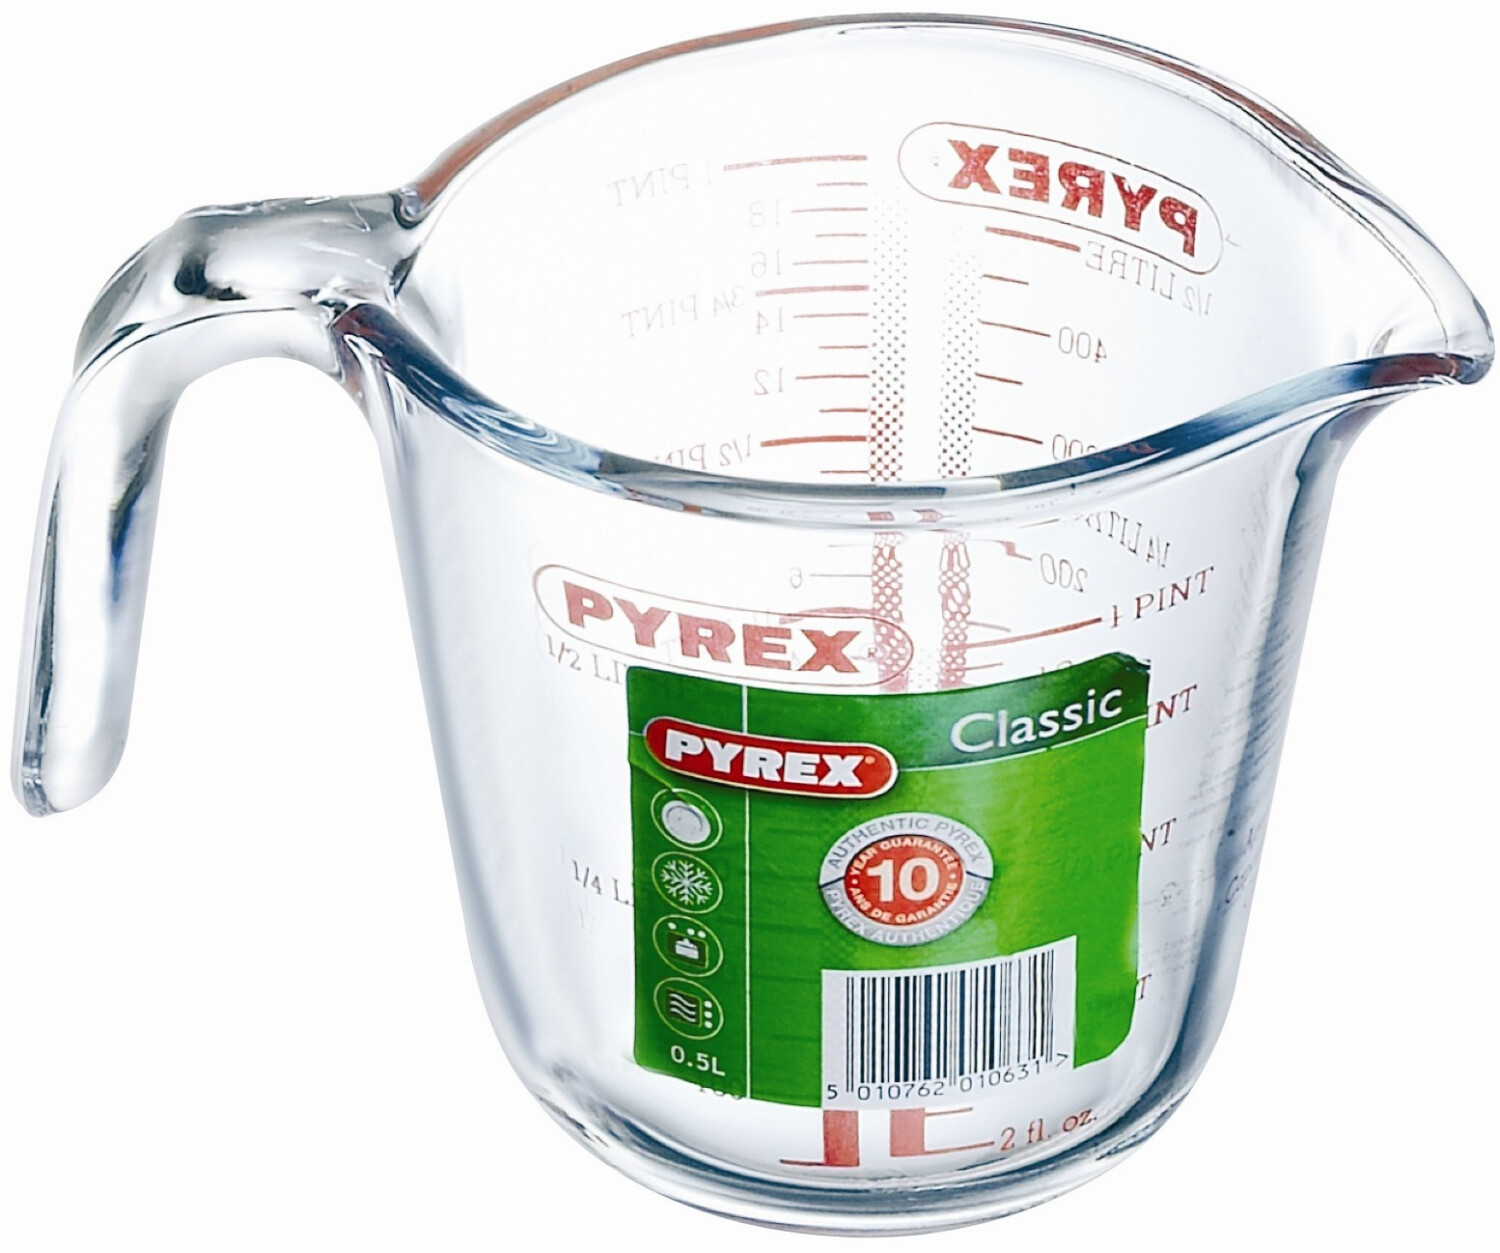 Pyrex - Classic - Broc Mesureur en Verre 0.50 L 